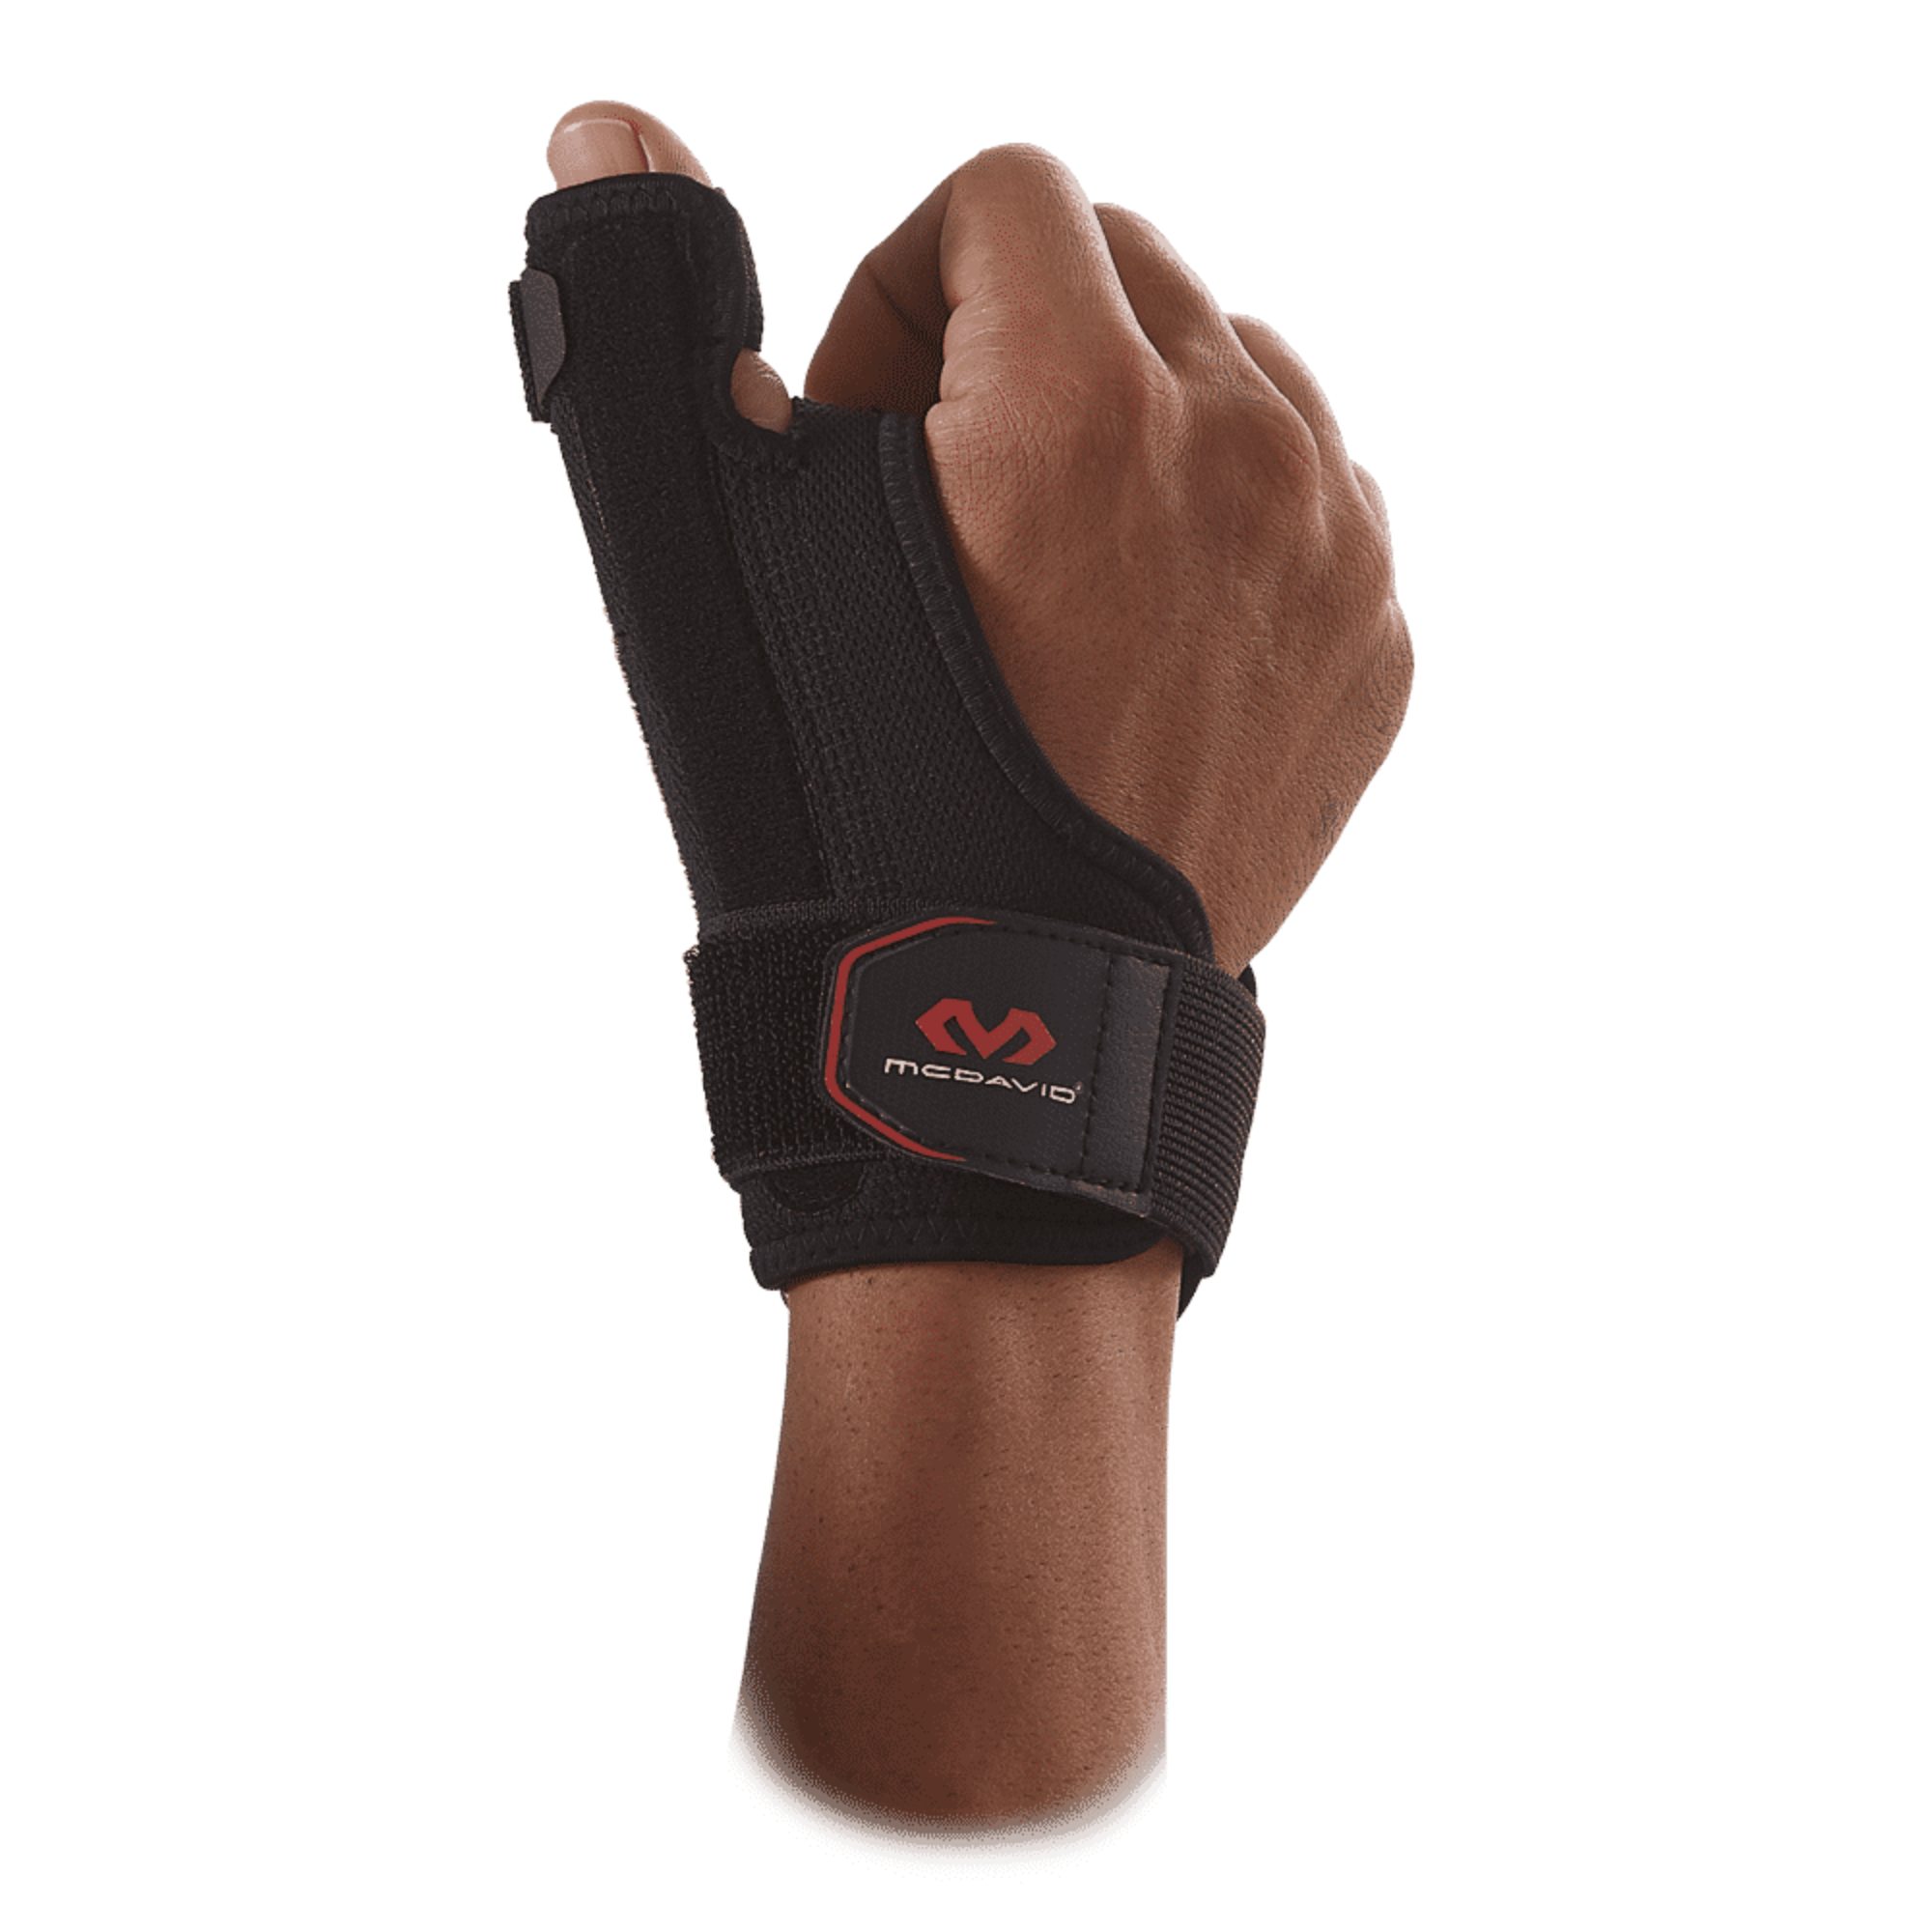 McDavid Wrist Strap Thumb Stabilizer